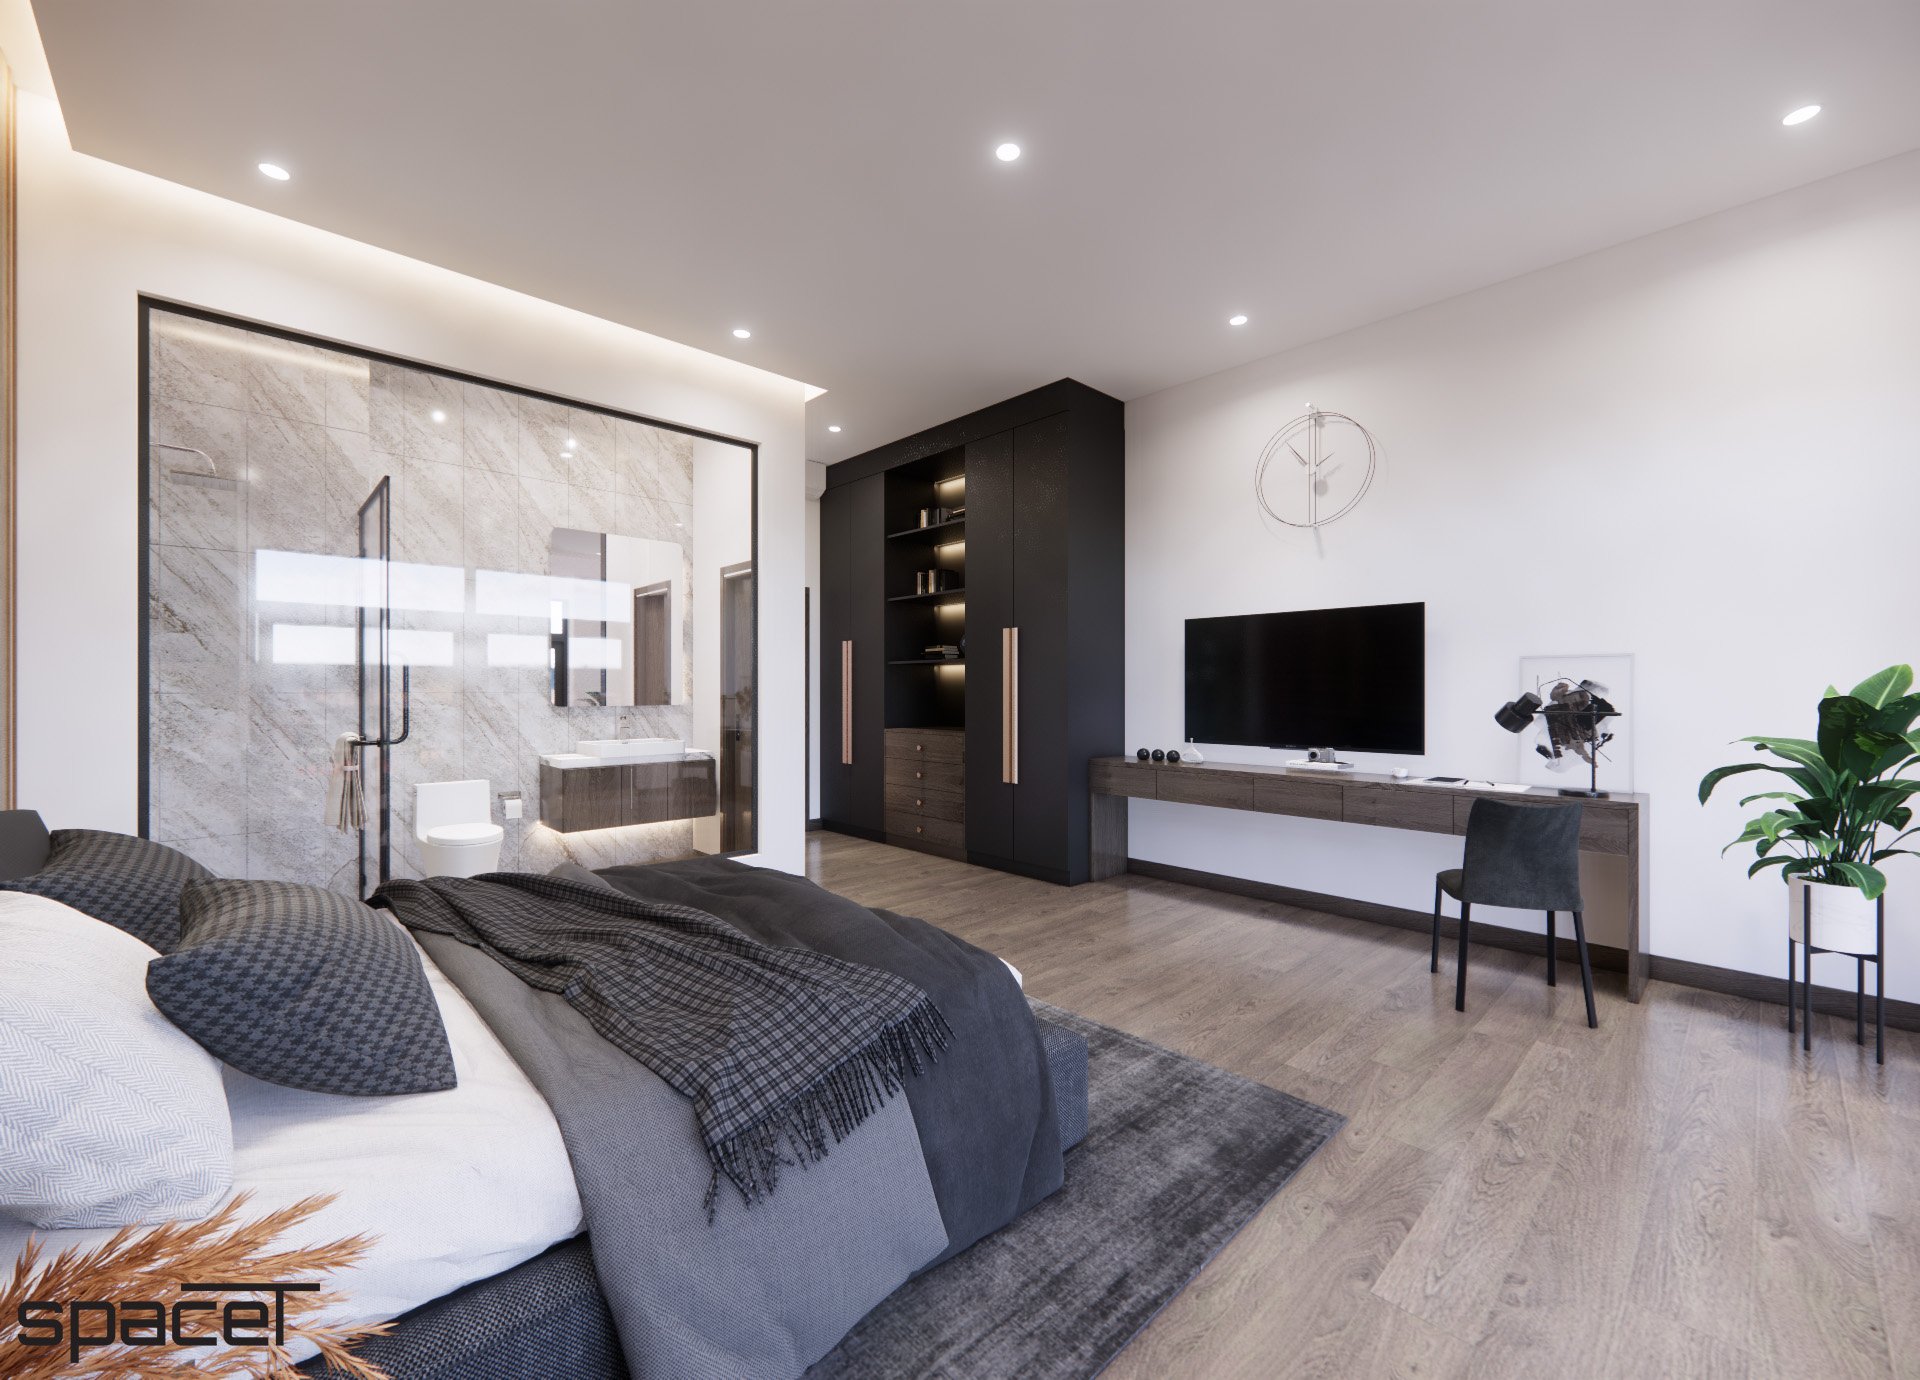 Phòng ngủ, phong cách Hiện đại Modern, thiết kế concept nội thất, nhà phố quận Bình Thạnh